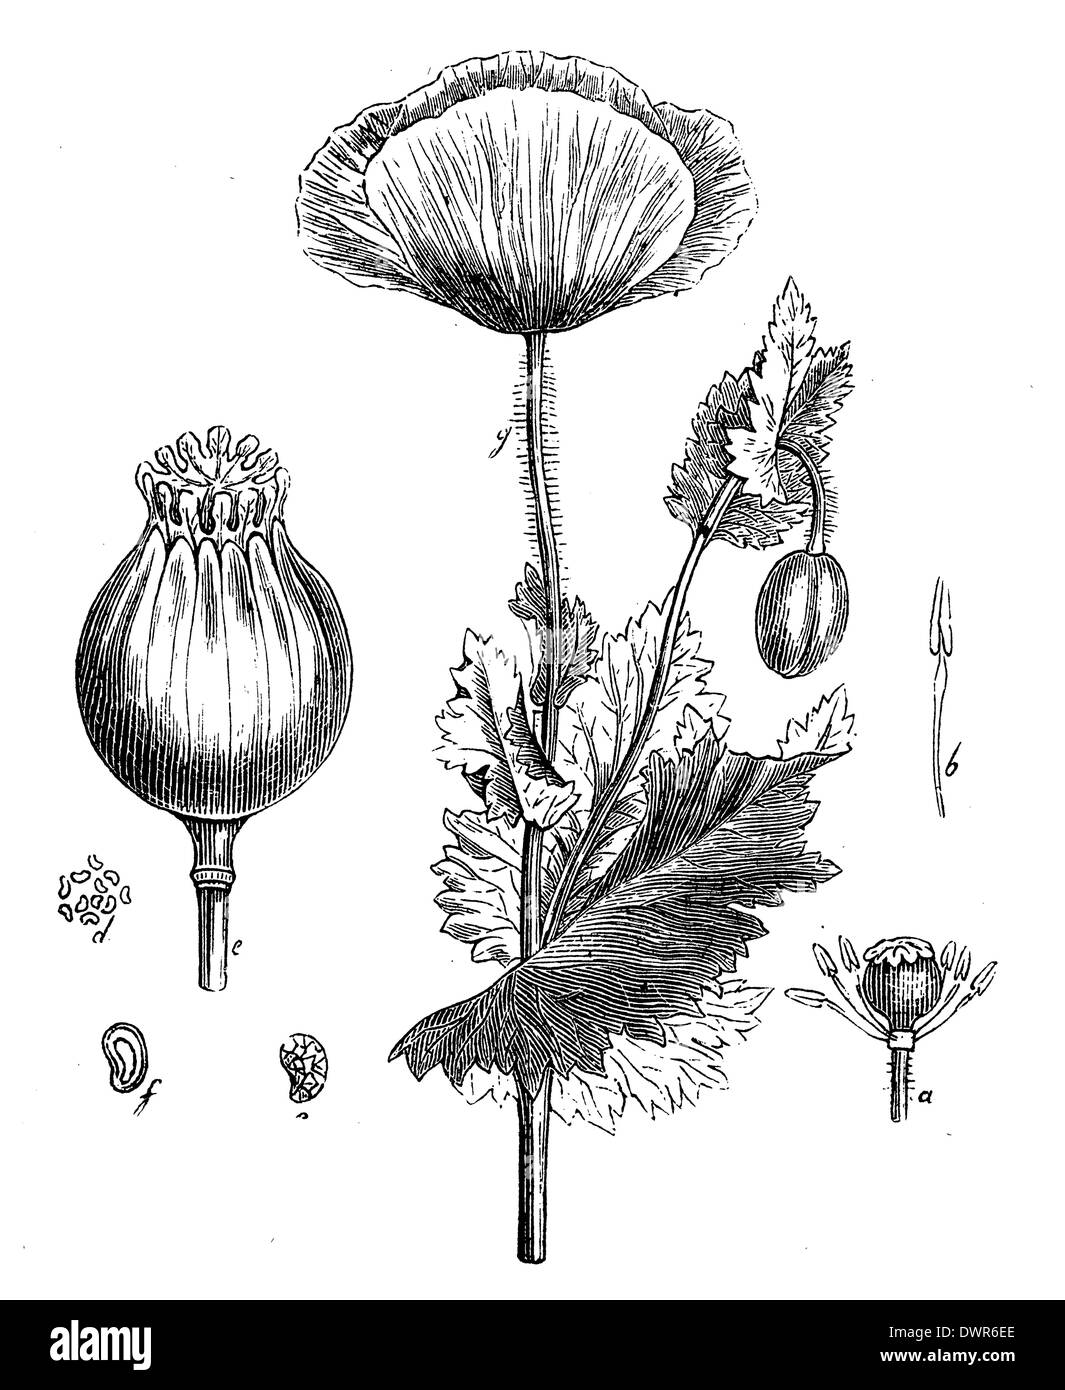 Old botanical illustration poppy Black and White Stock Photos & Images ...